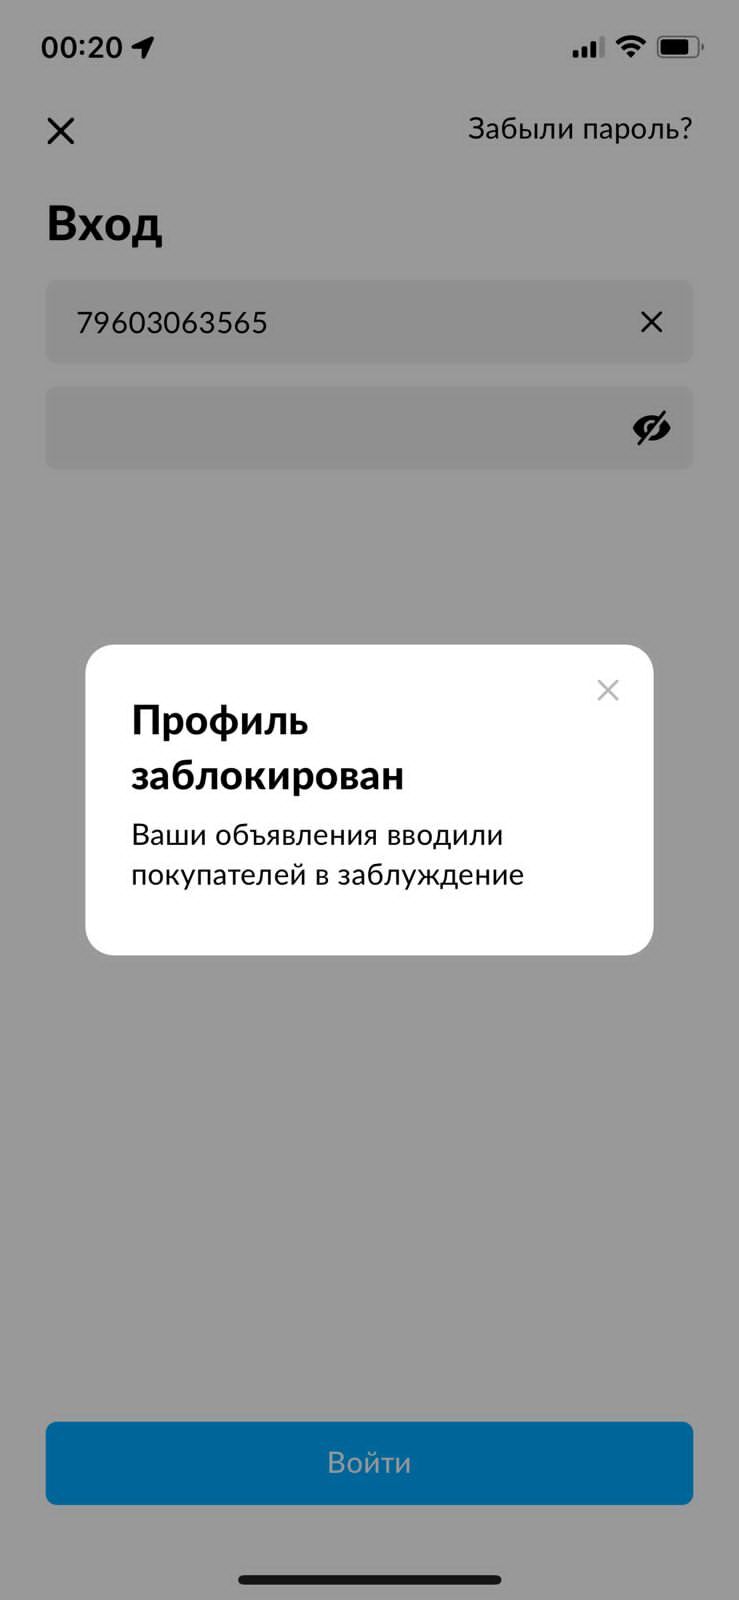 Часто блокируют страницы в Одноклассниках